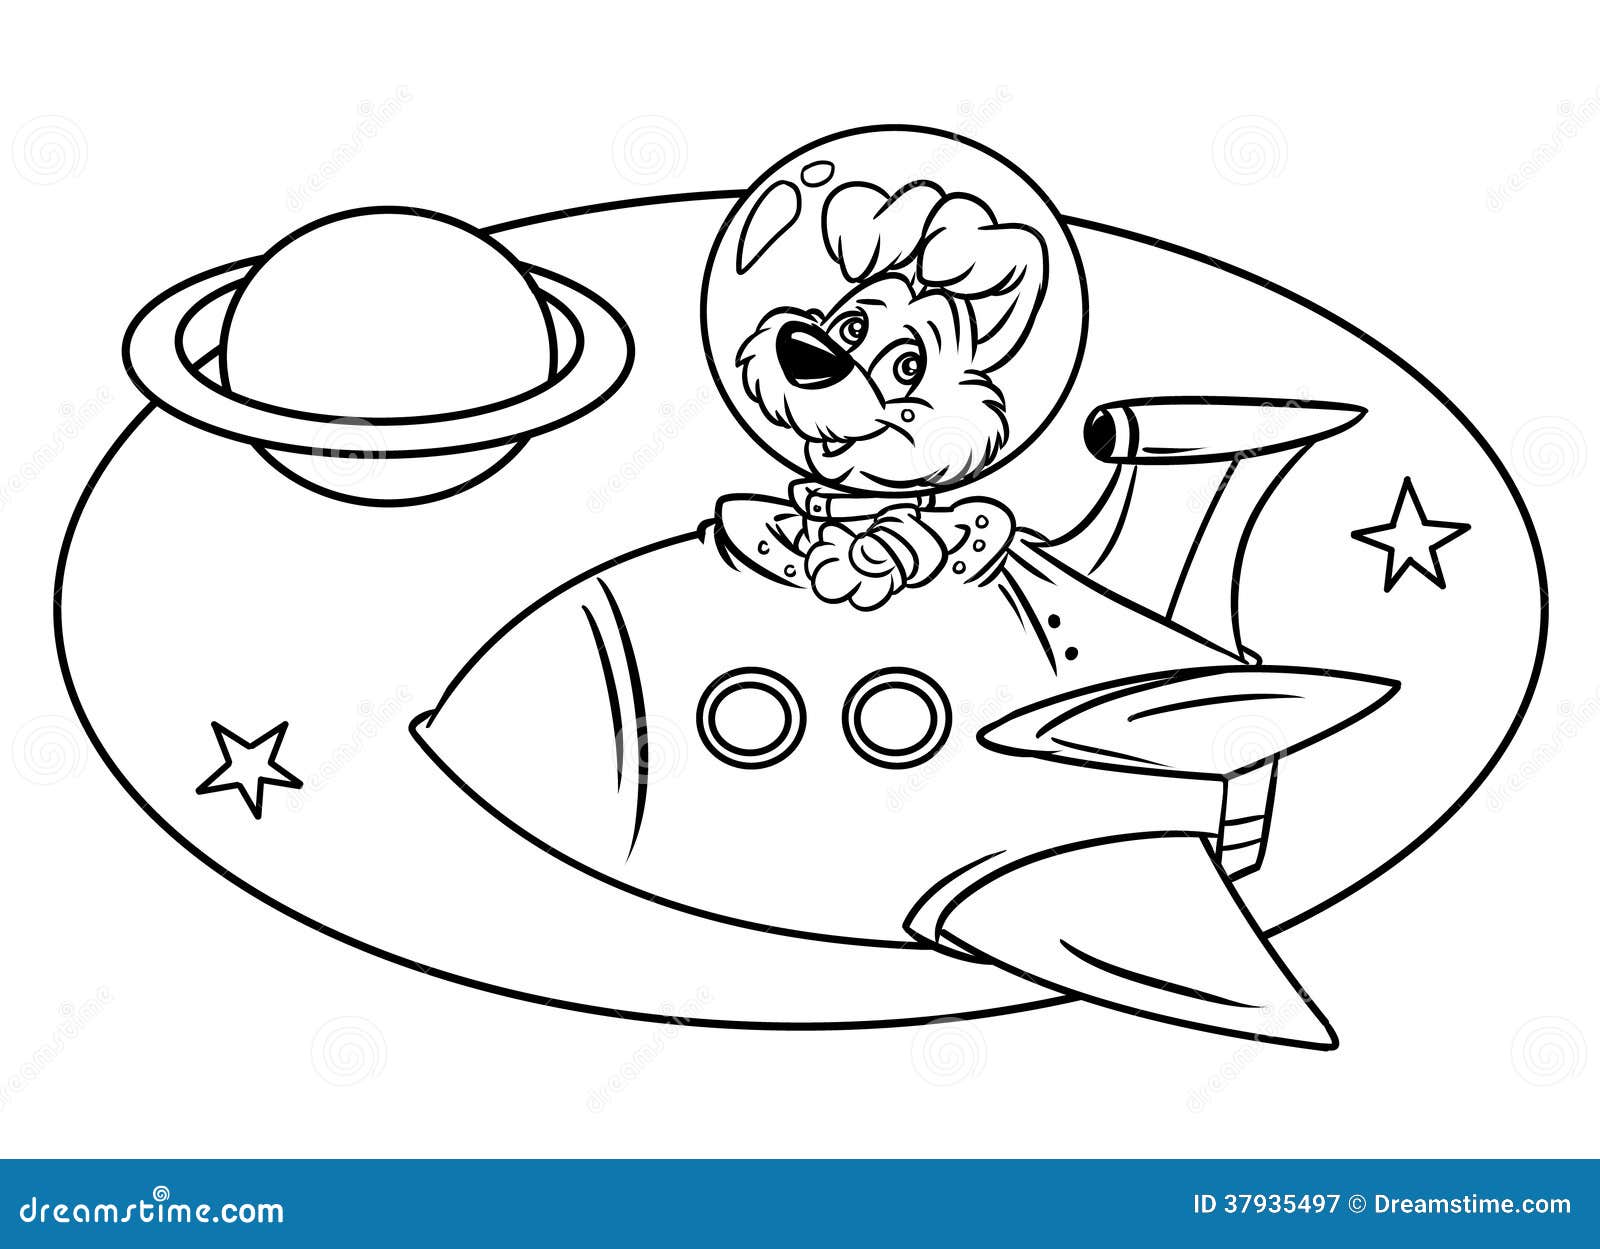 Раскраски день космонавтики для детского сада. Раскраска день космонавтики для детей. Космос раскраска для детей. Раскраска. В космосе. Раскраска для малышей. Космос.